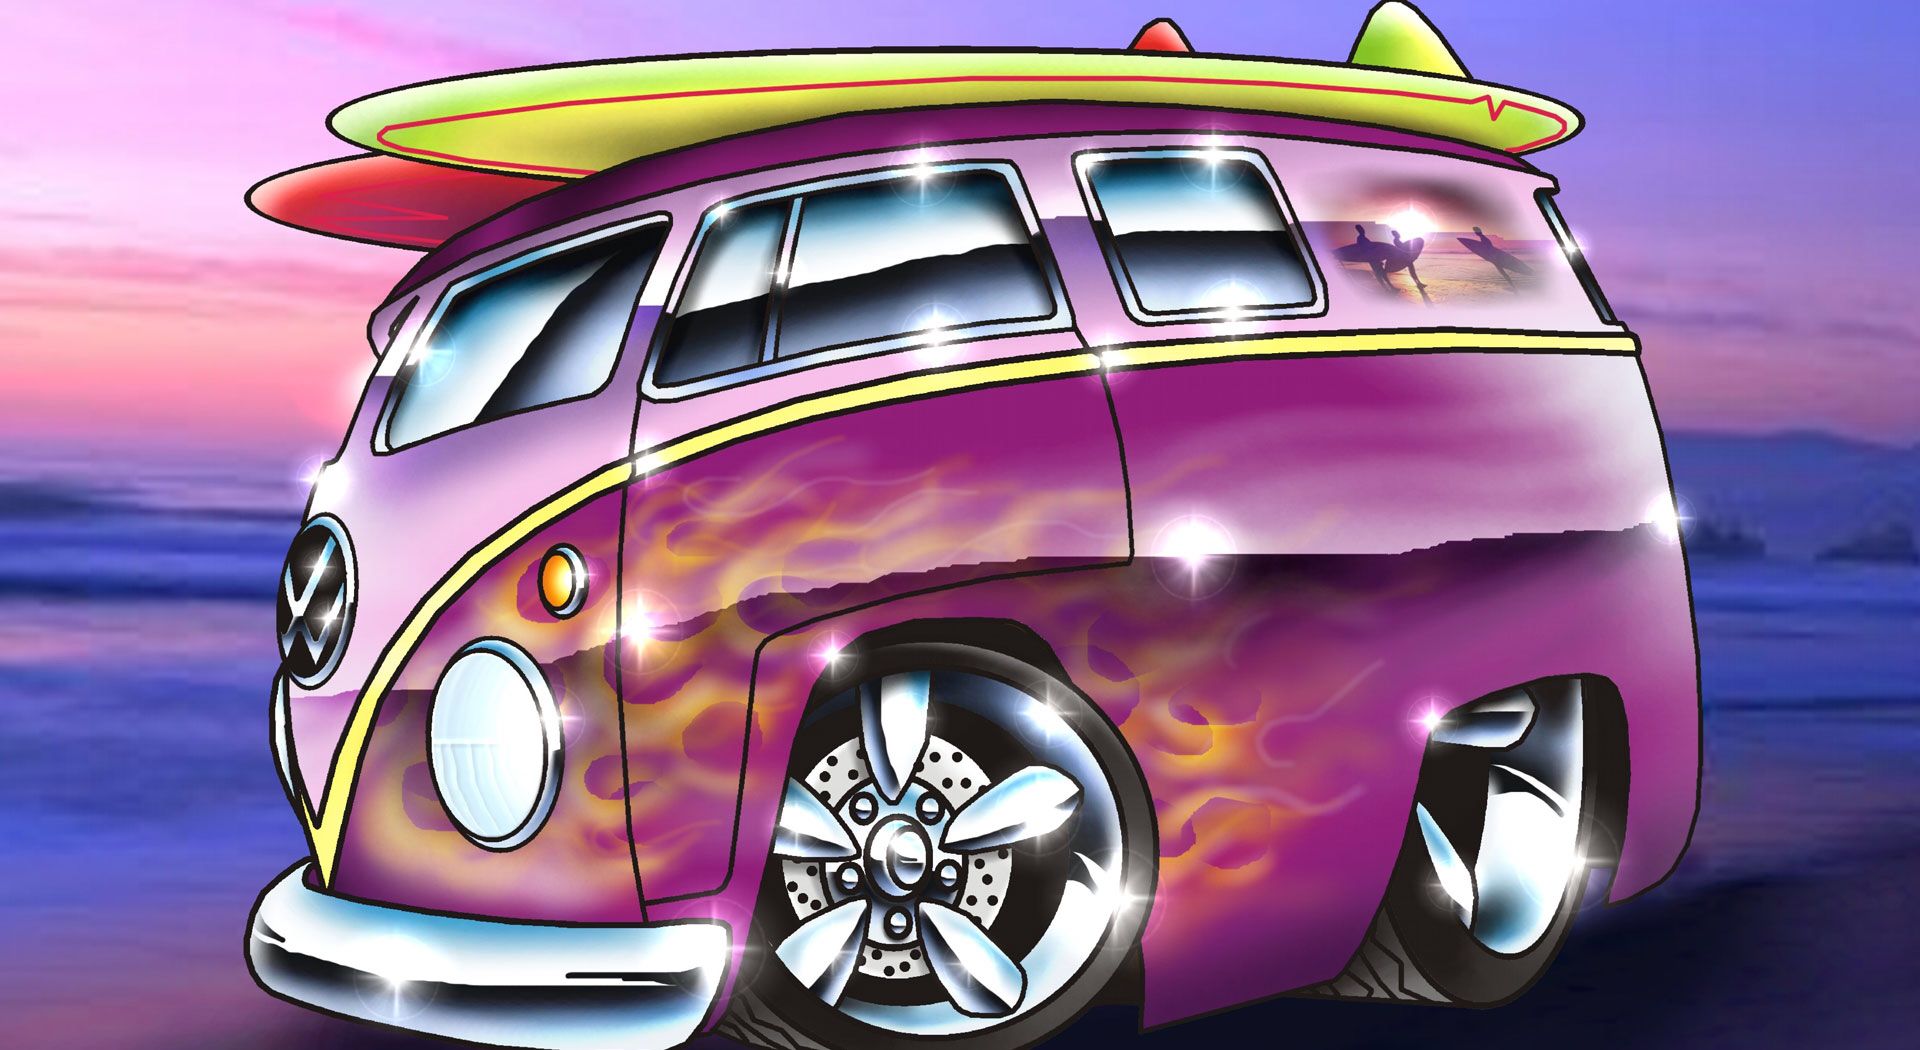 Wallpaper Download.php?f=vw_split_screen_camper Vw_split_screen_camper_1920x1080.j. Cartoon Car Drawing, Cool Car Drawings, Car Cartoon